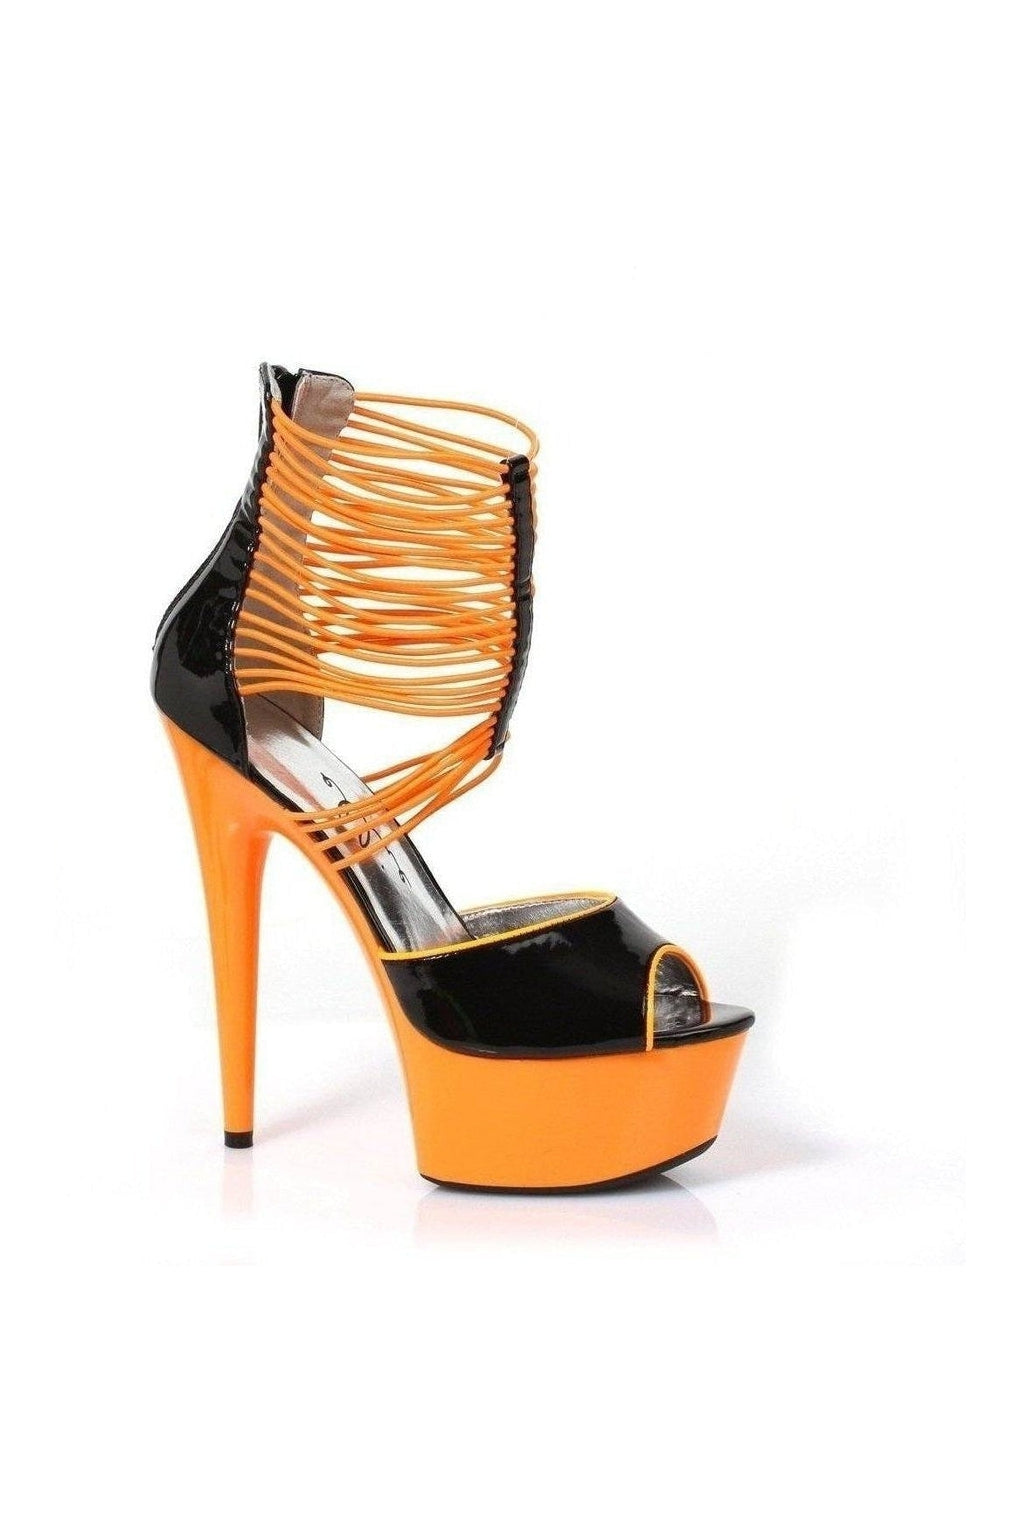 609-ADORE Platform Sandal | Orange Patent-Ellie Shoes-Orange-Sandals-SEXYSHOES.COM